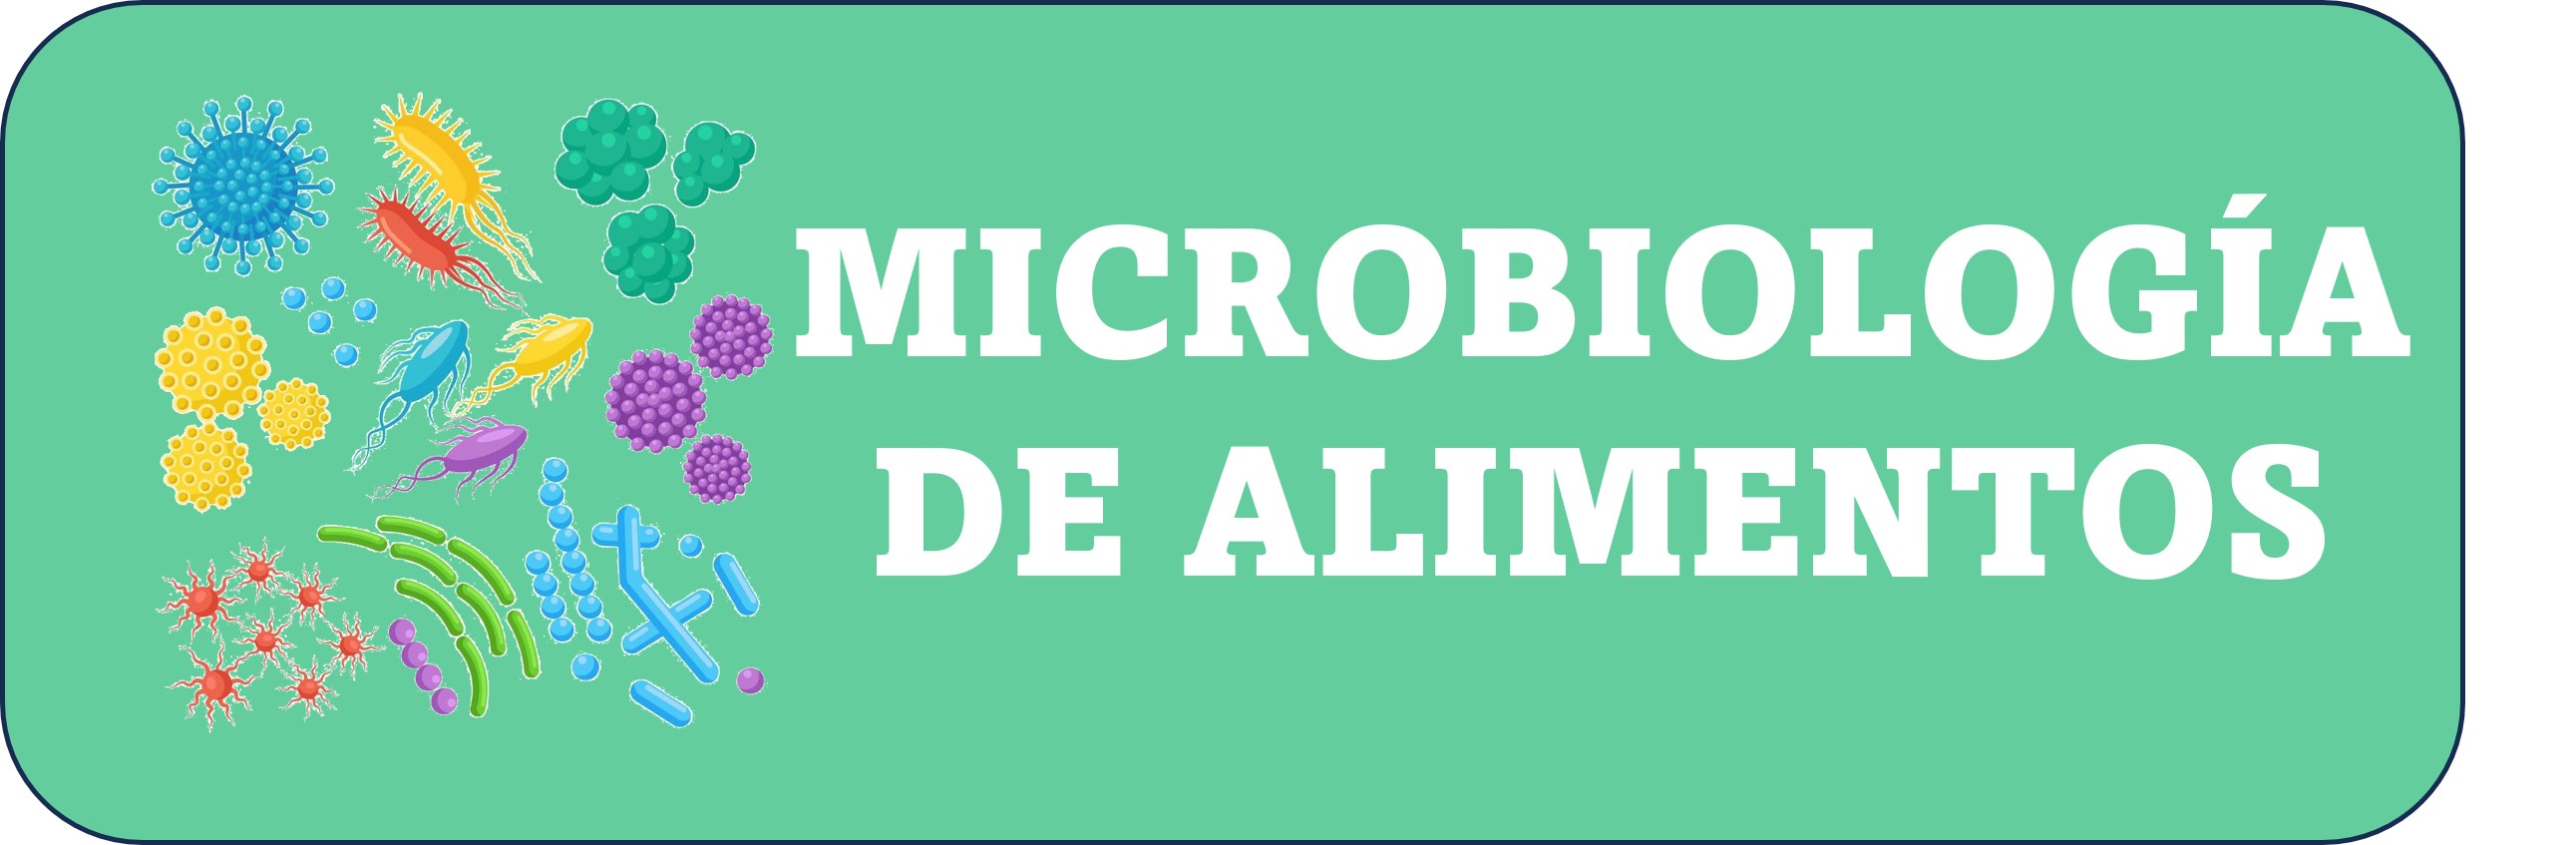 Microbiología de Alimentos